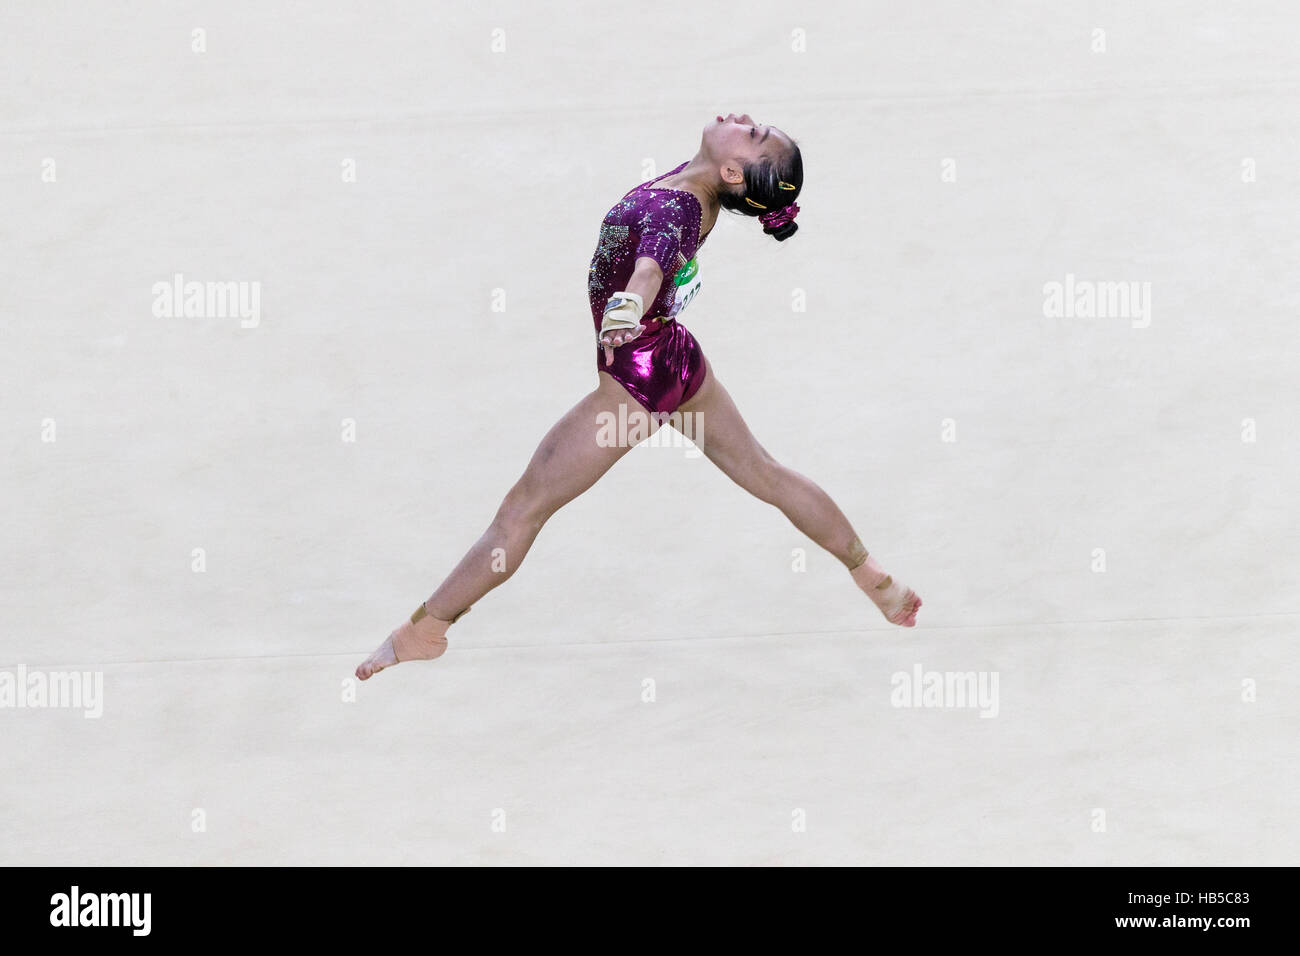 Río de Janeiro, Brasil. El 9 de agosto de 2016. Chunsong Shang (CHN) realiza el ejercicio del piso dring team competencia en los Juegos Olímpicos de Verano de 2016. ©Pau Foto de stock